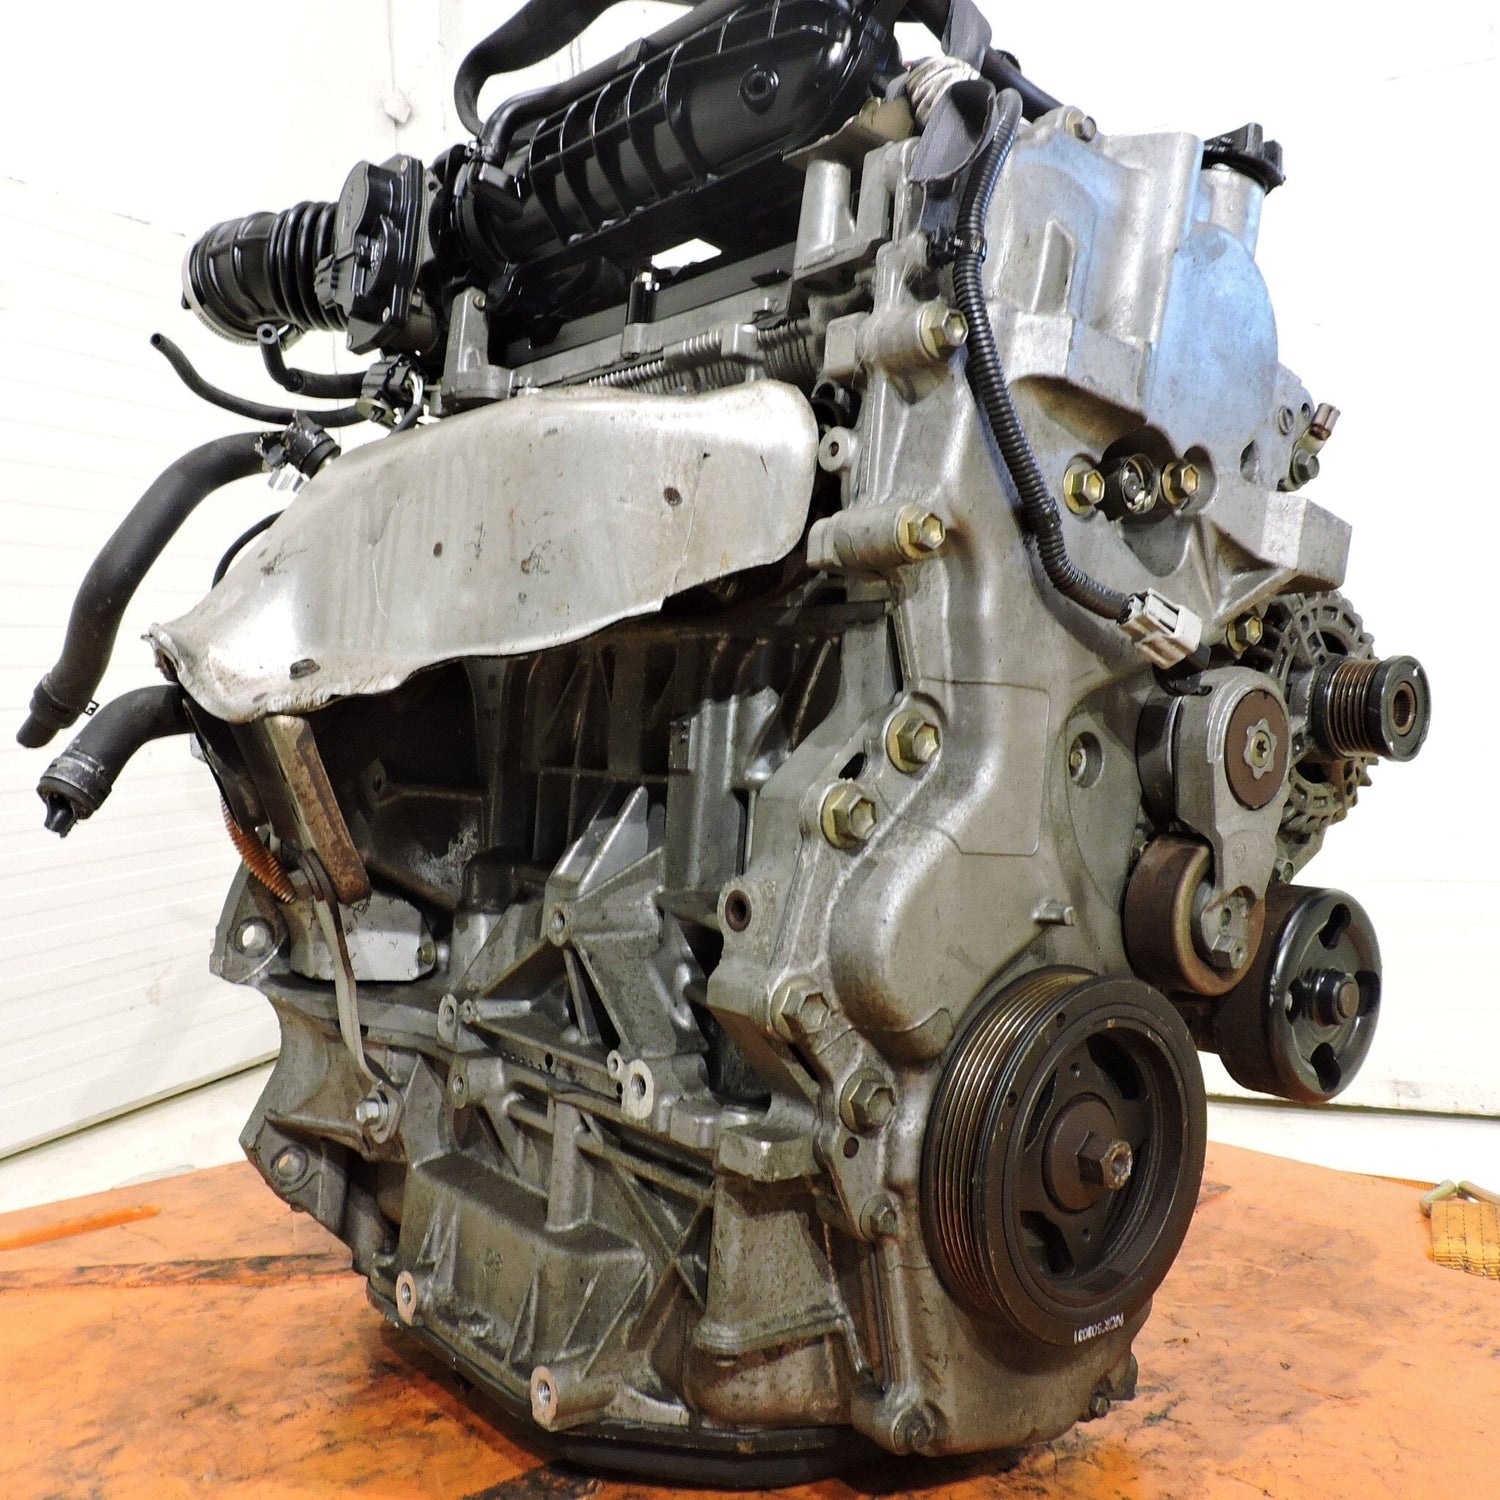 Nissan Sentra 2007-2012 2.0L JDM Engine - MR20 With Egr